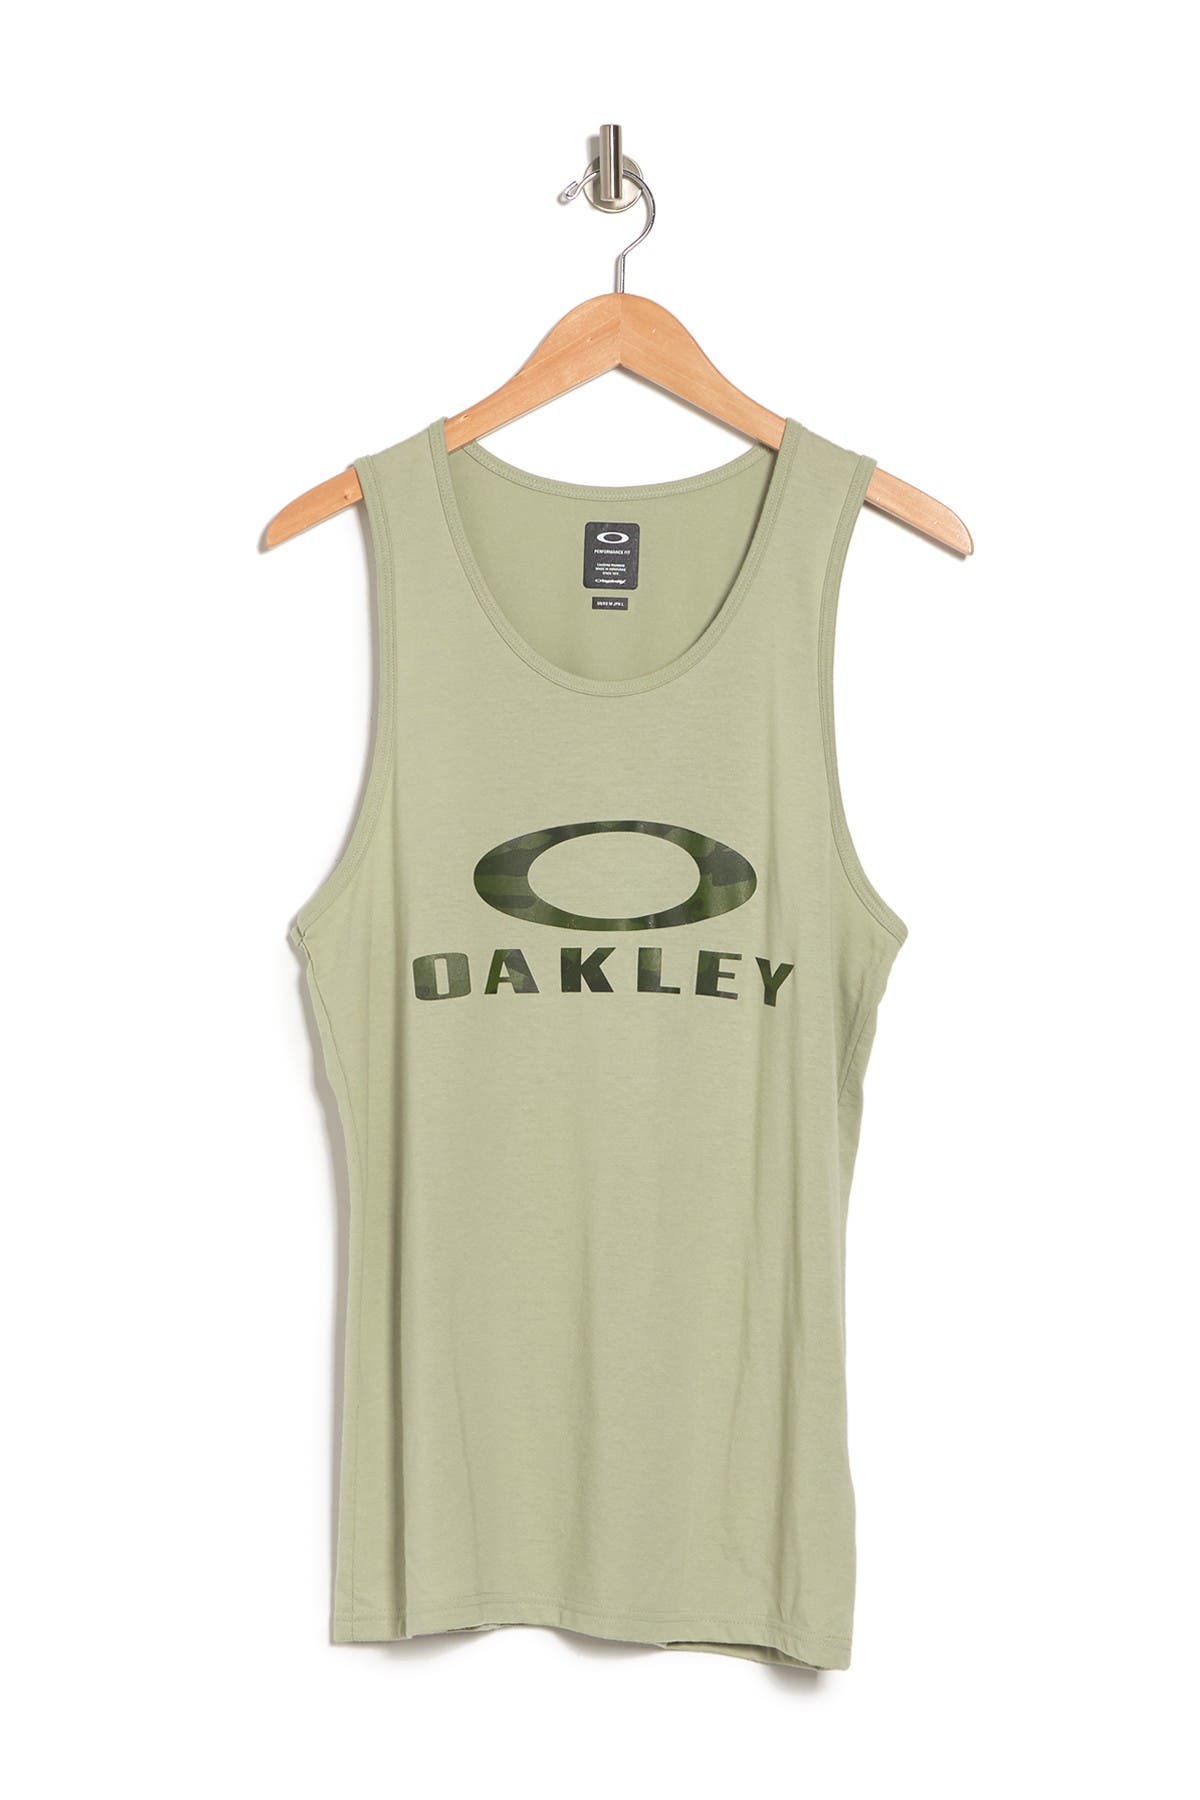 Oakley Bark Logo Print Tank In Uniform Green